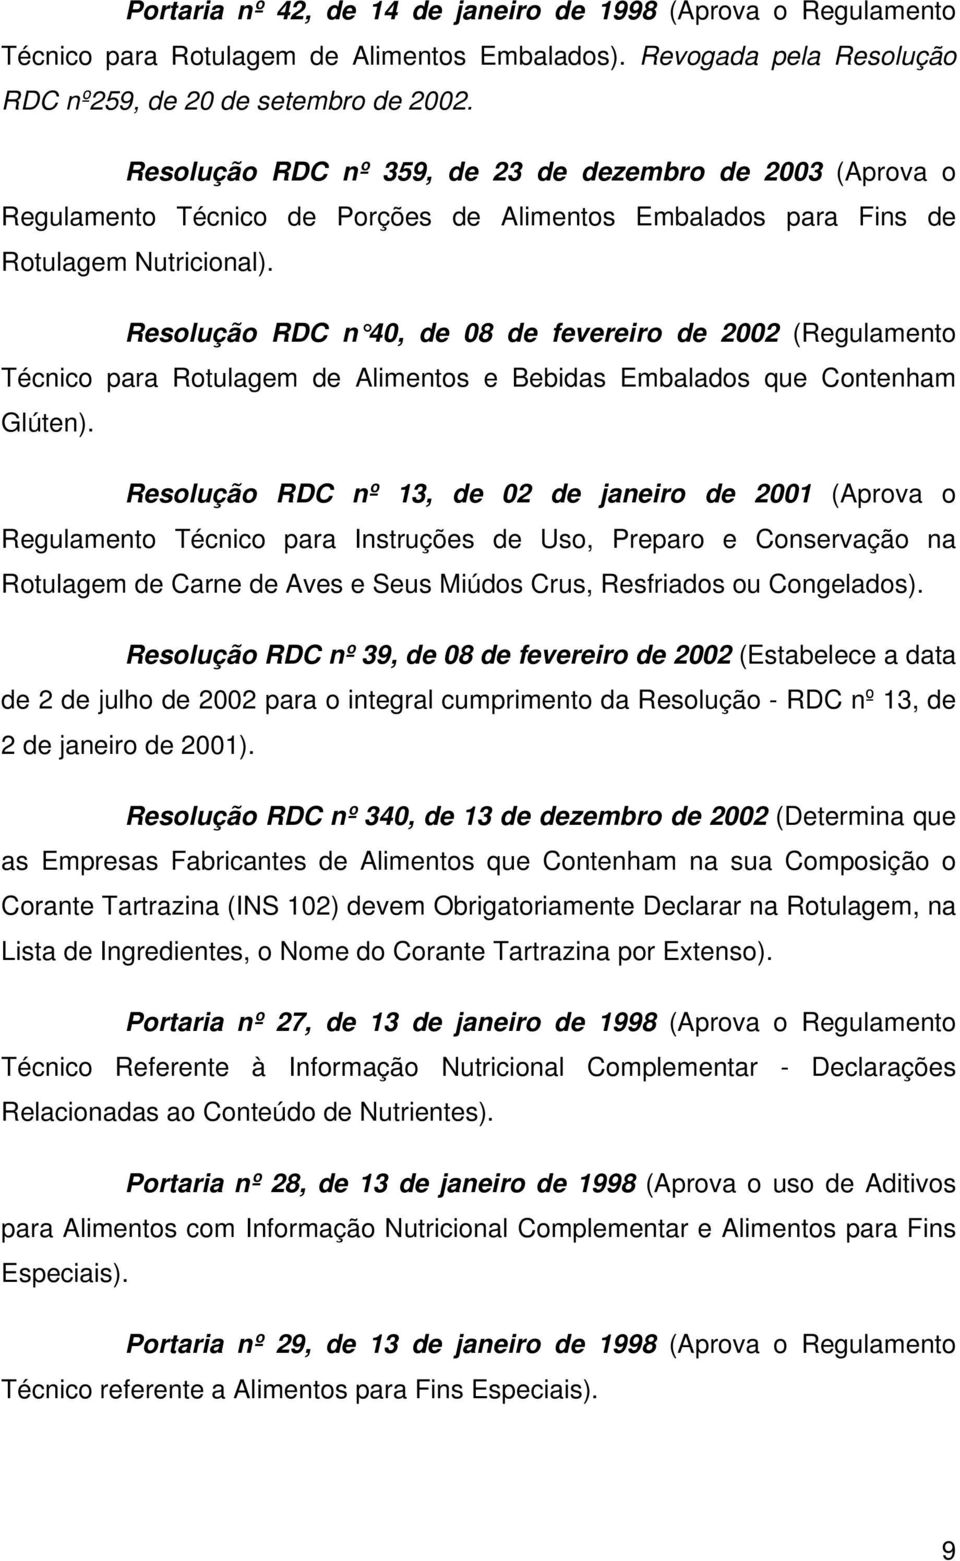 Resolução RDC n 40, de 08 de fevereiro de 2002 (Regulamento Técnico para Rotulagem de Alimentos e Bebidas Embalados que Contenham Glúten).